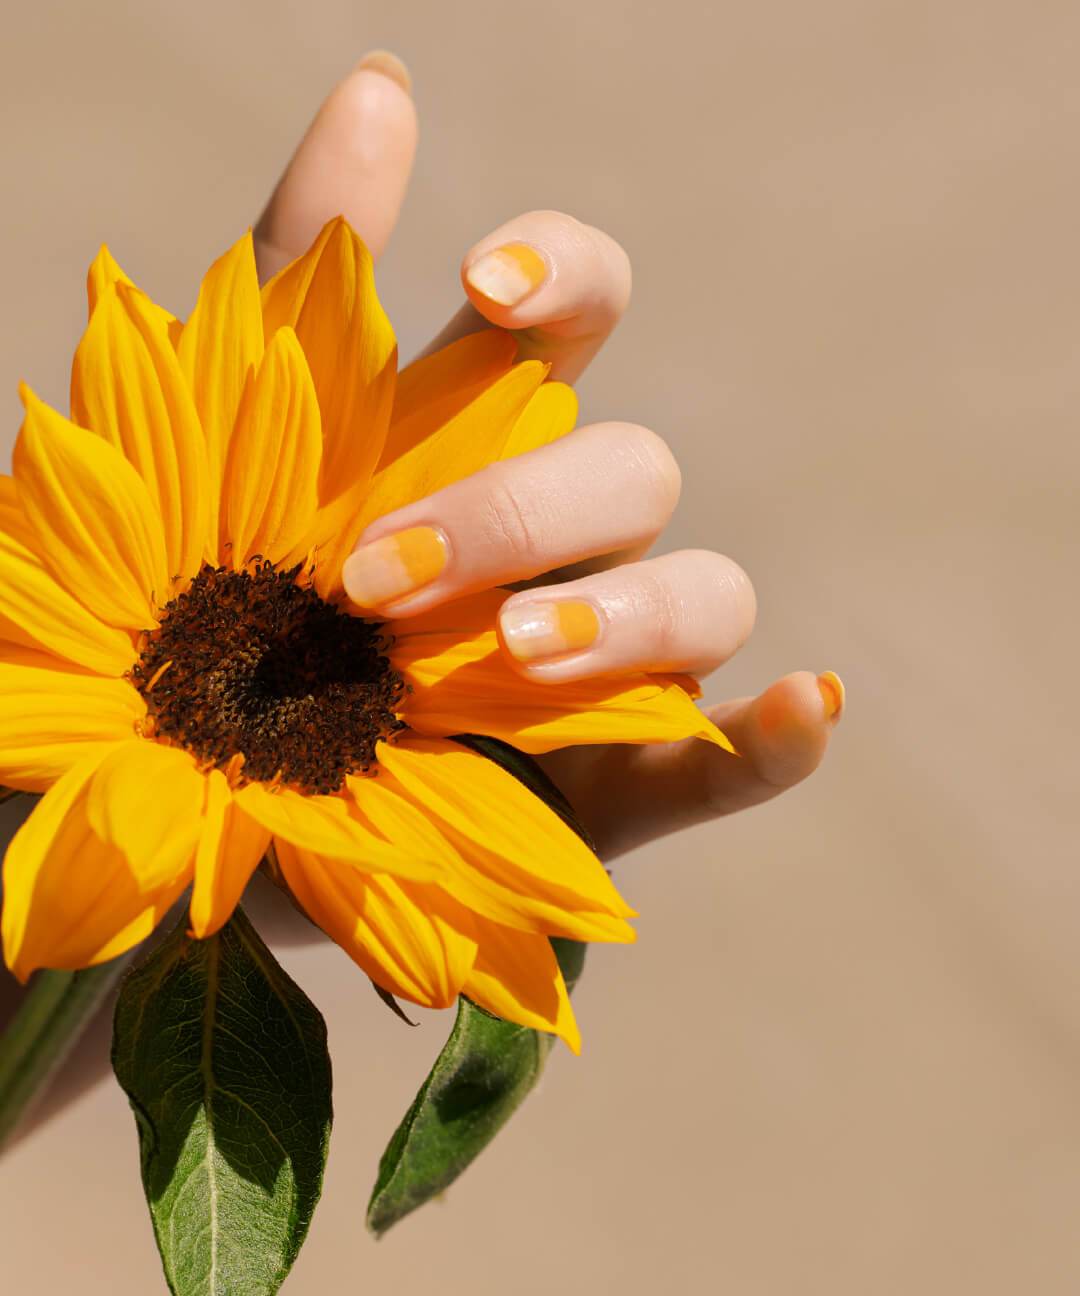 09 Sunflower イメージ画像